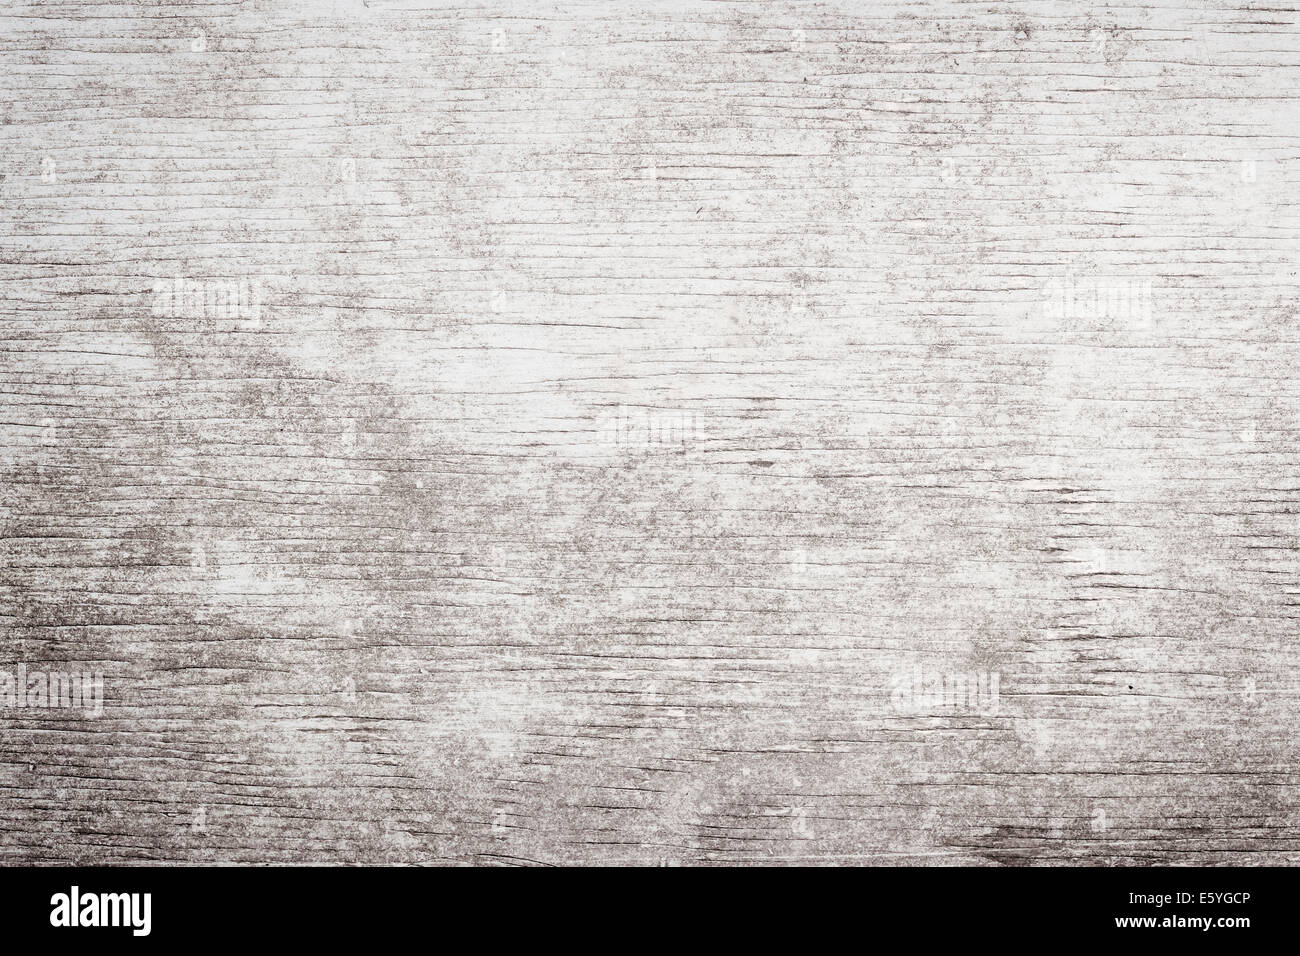 Grauen hölzernen Hintergrund verwitterten distressed rustikal Holz mit verblassten Weißlack zeigt Woodgrain Struktur Stockfoto